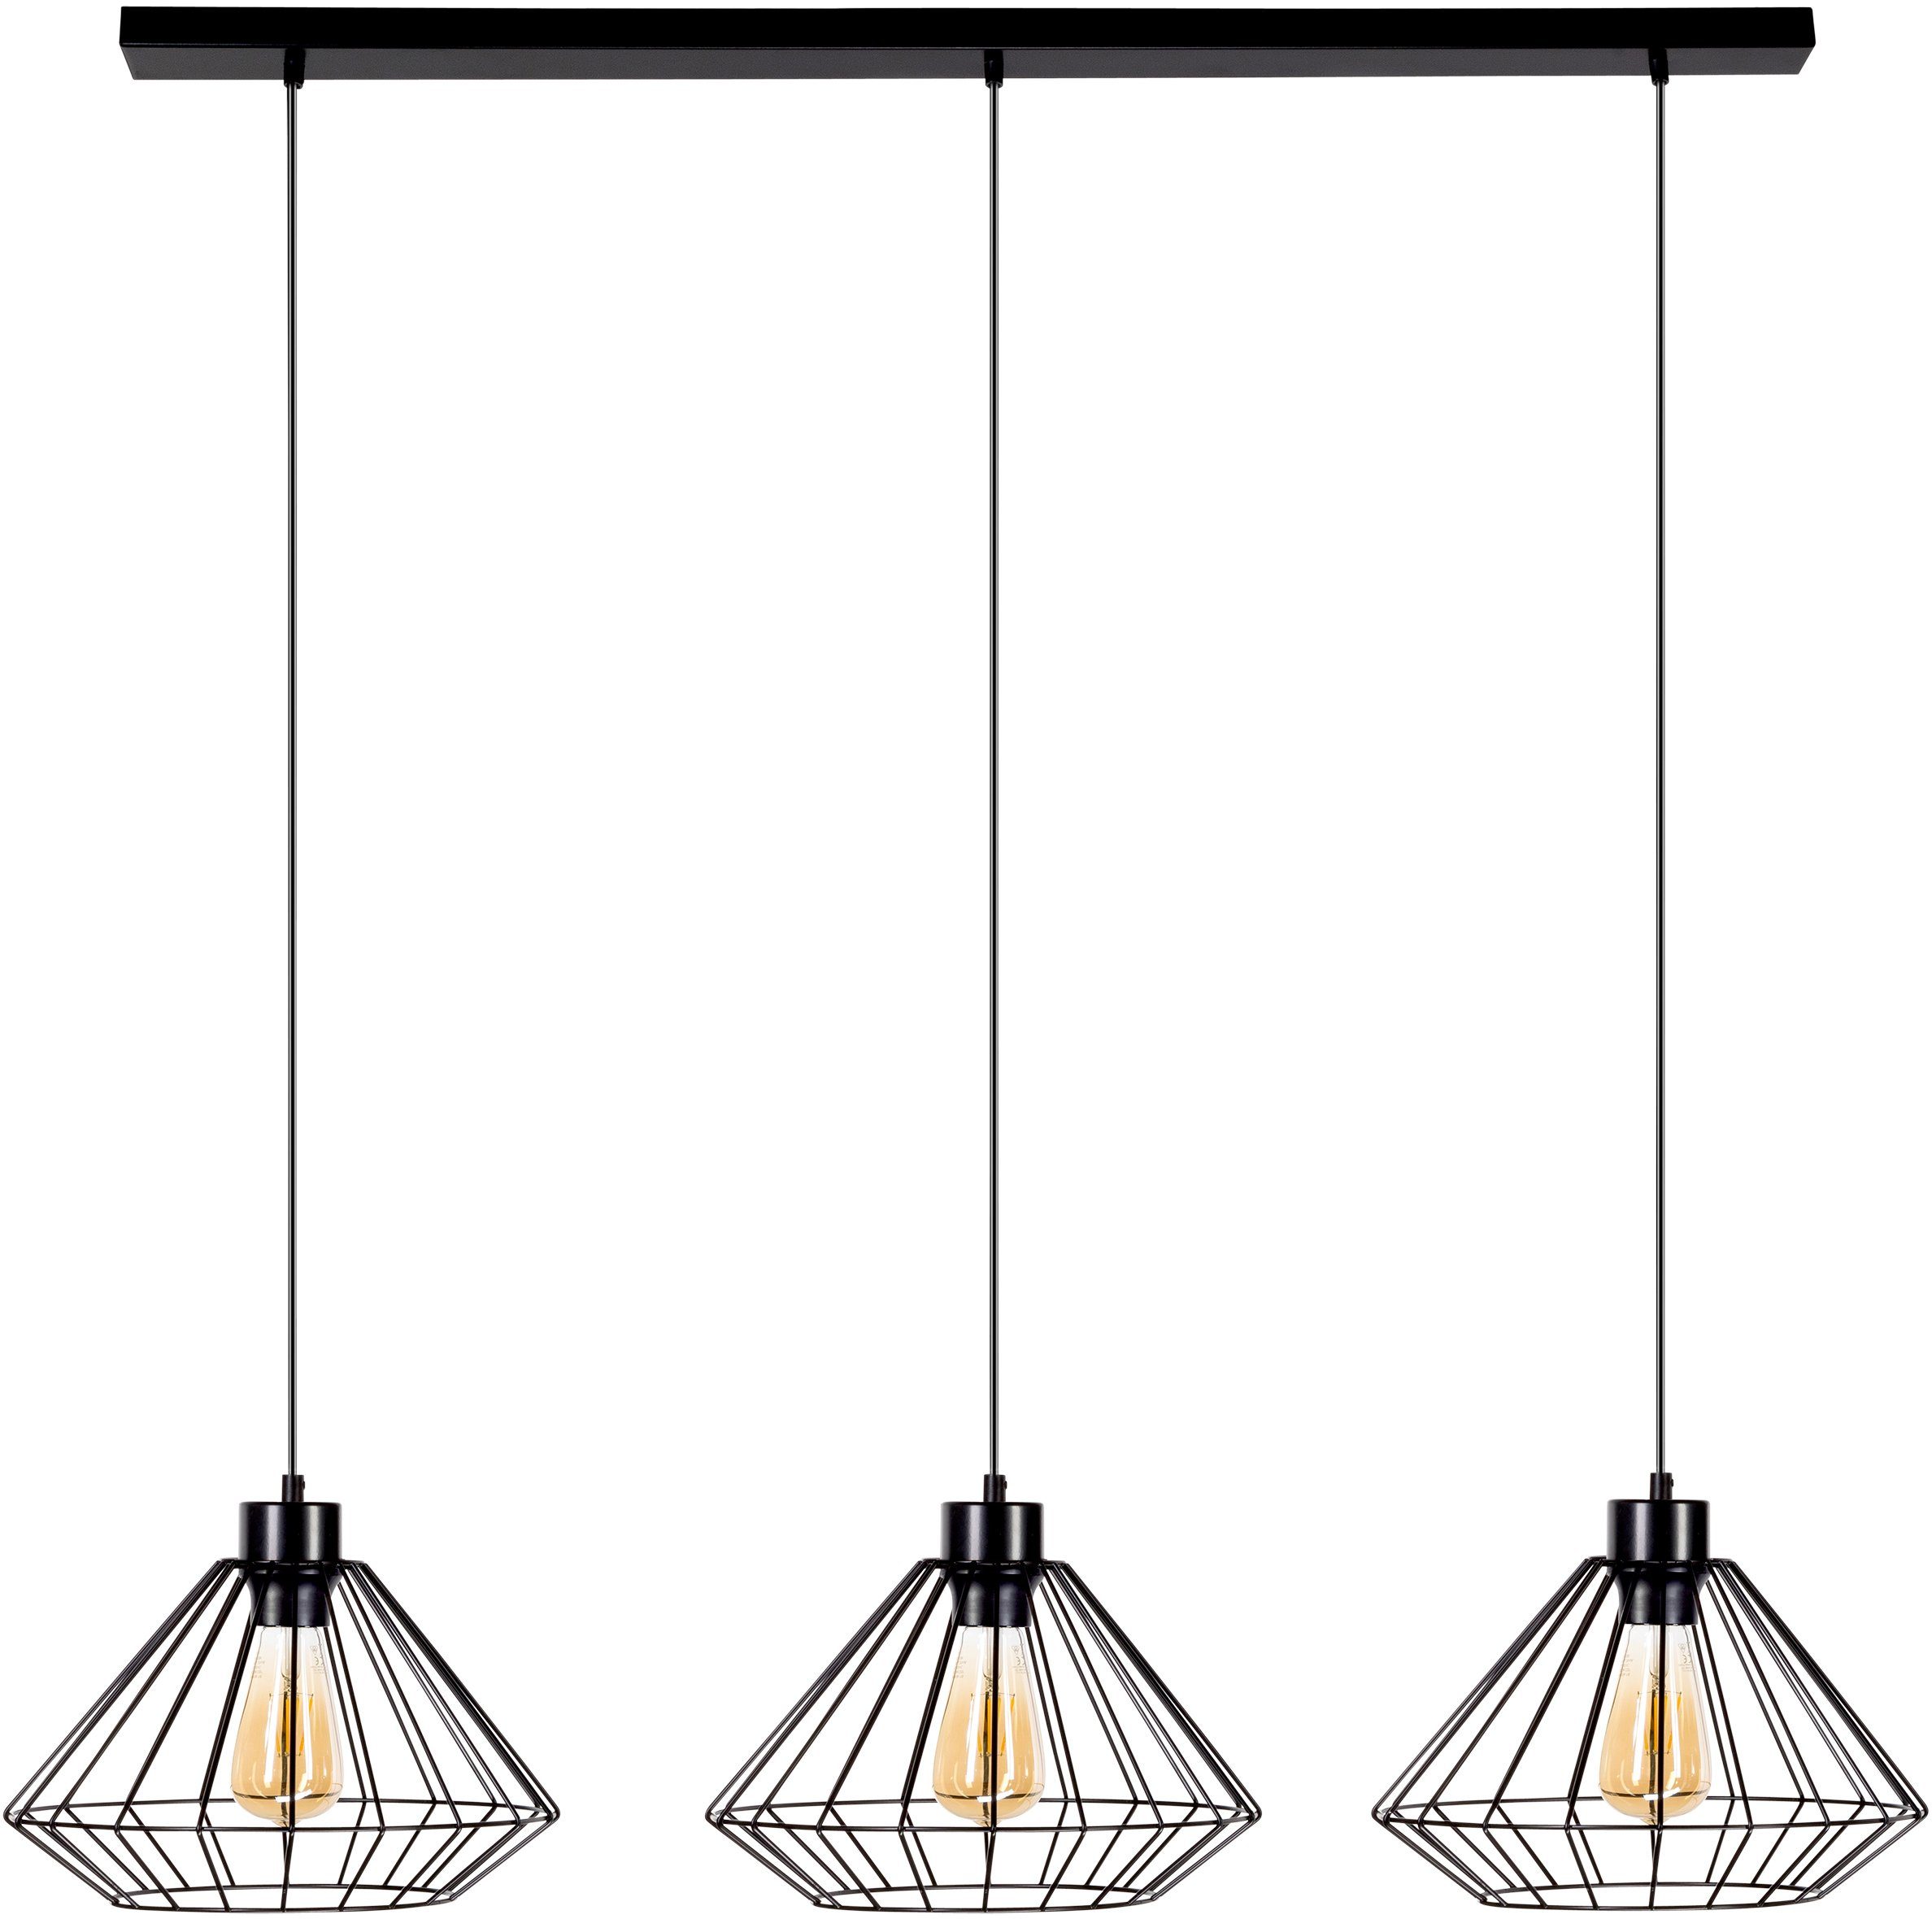 BRITOP LIGHTING Staande lamp RAQUELLE Decoratieve lamp van metaal, bijpassende LM E27 / exclusief, Made in Europe (1 stuk)